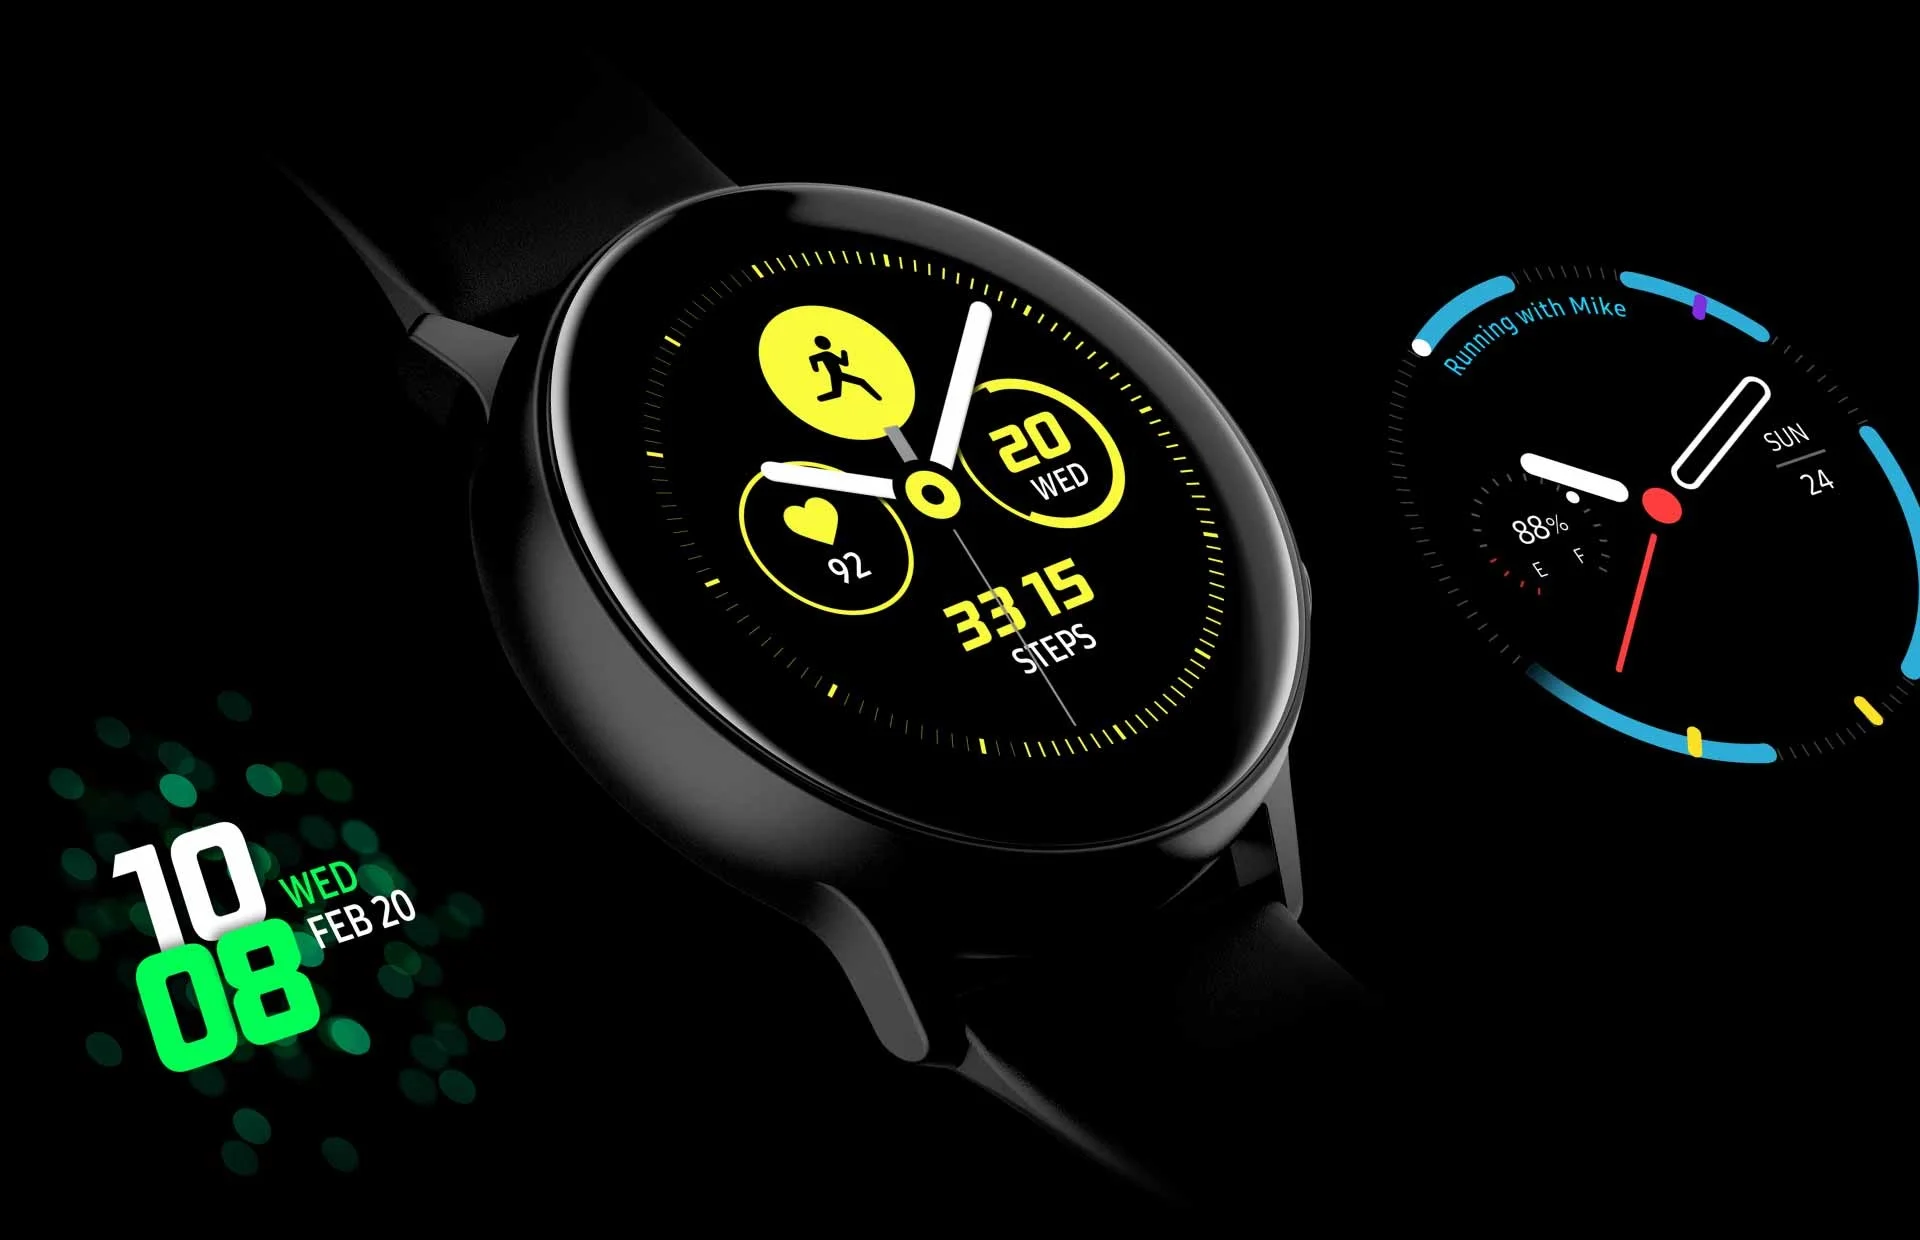 Анонс Samsung Galaxy Watch Active: обновленный дизайн, защита от воды и посредственная начинка - фото 1